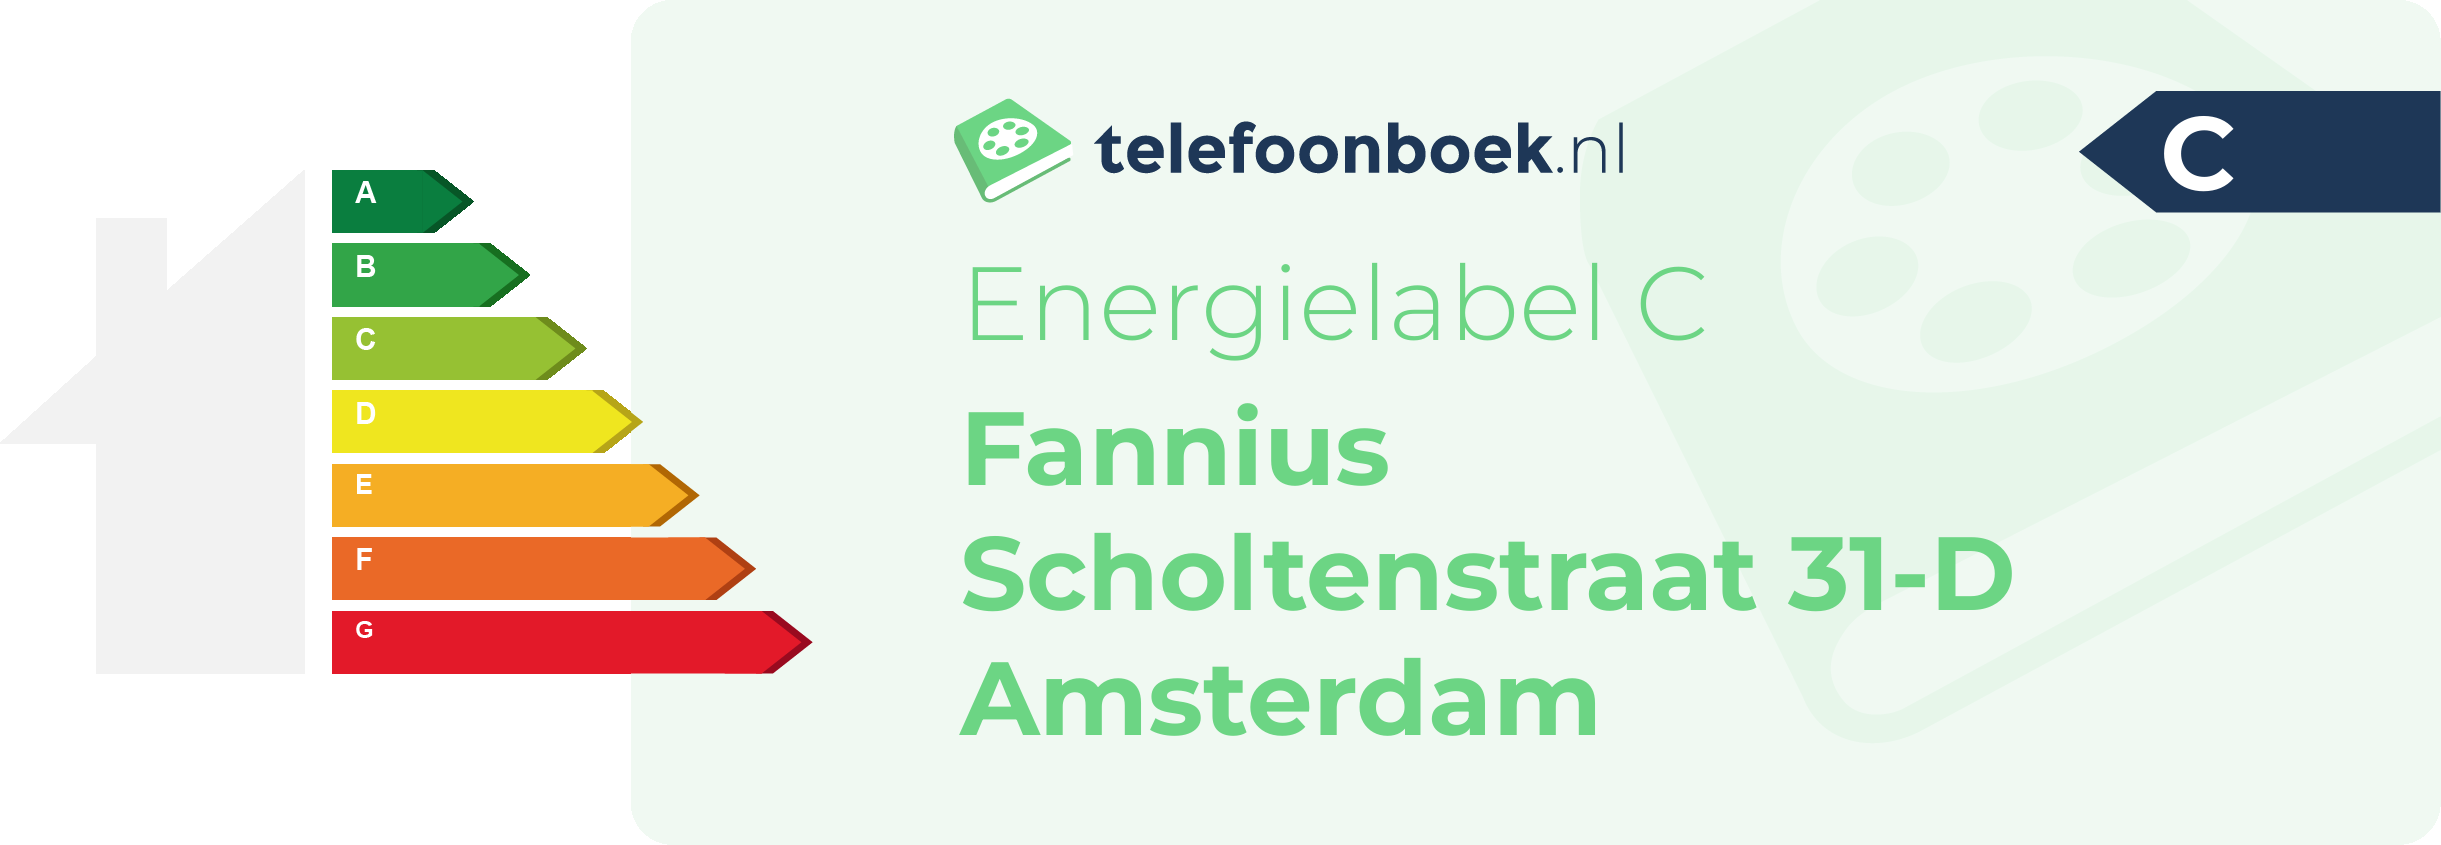 Energielabel Fannius Scholtenstraat 31-D Amsterdam